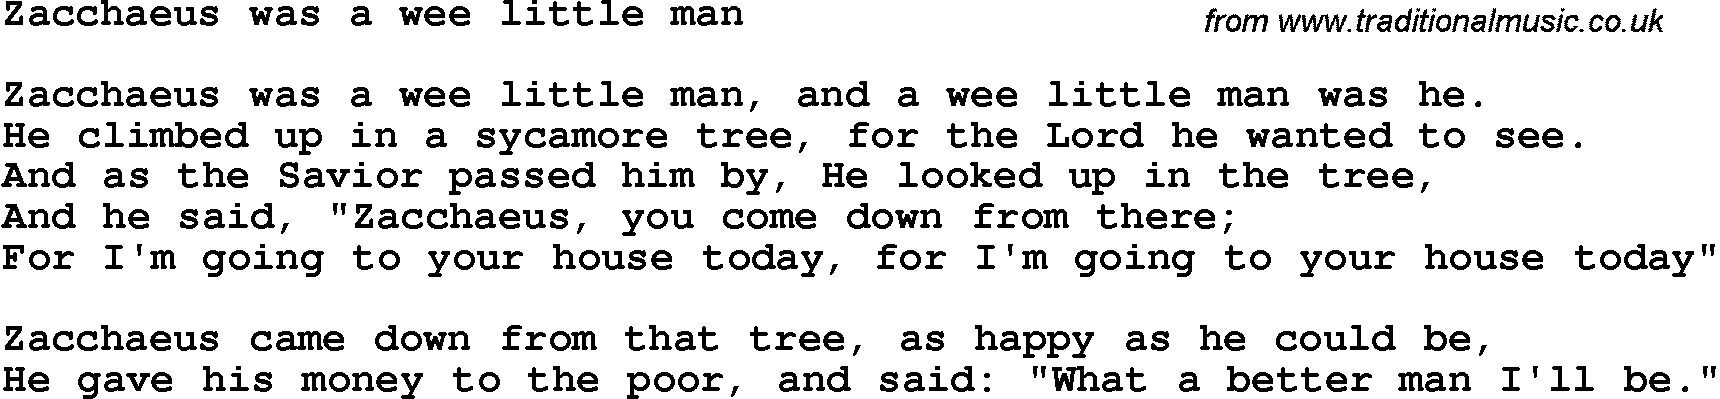 Christian Chlidrens Song Zacchaeus Was A Wee Little Man Lyrics